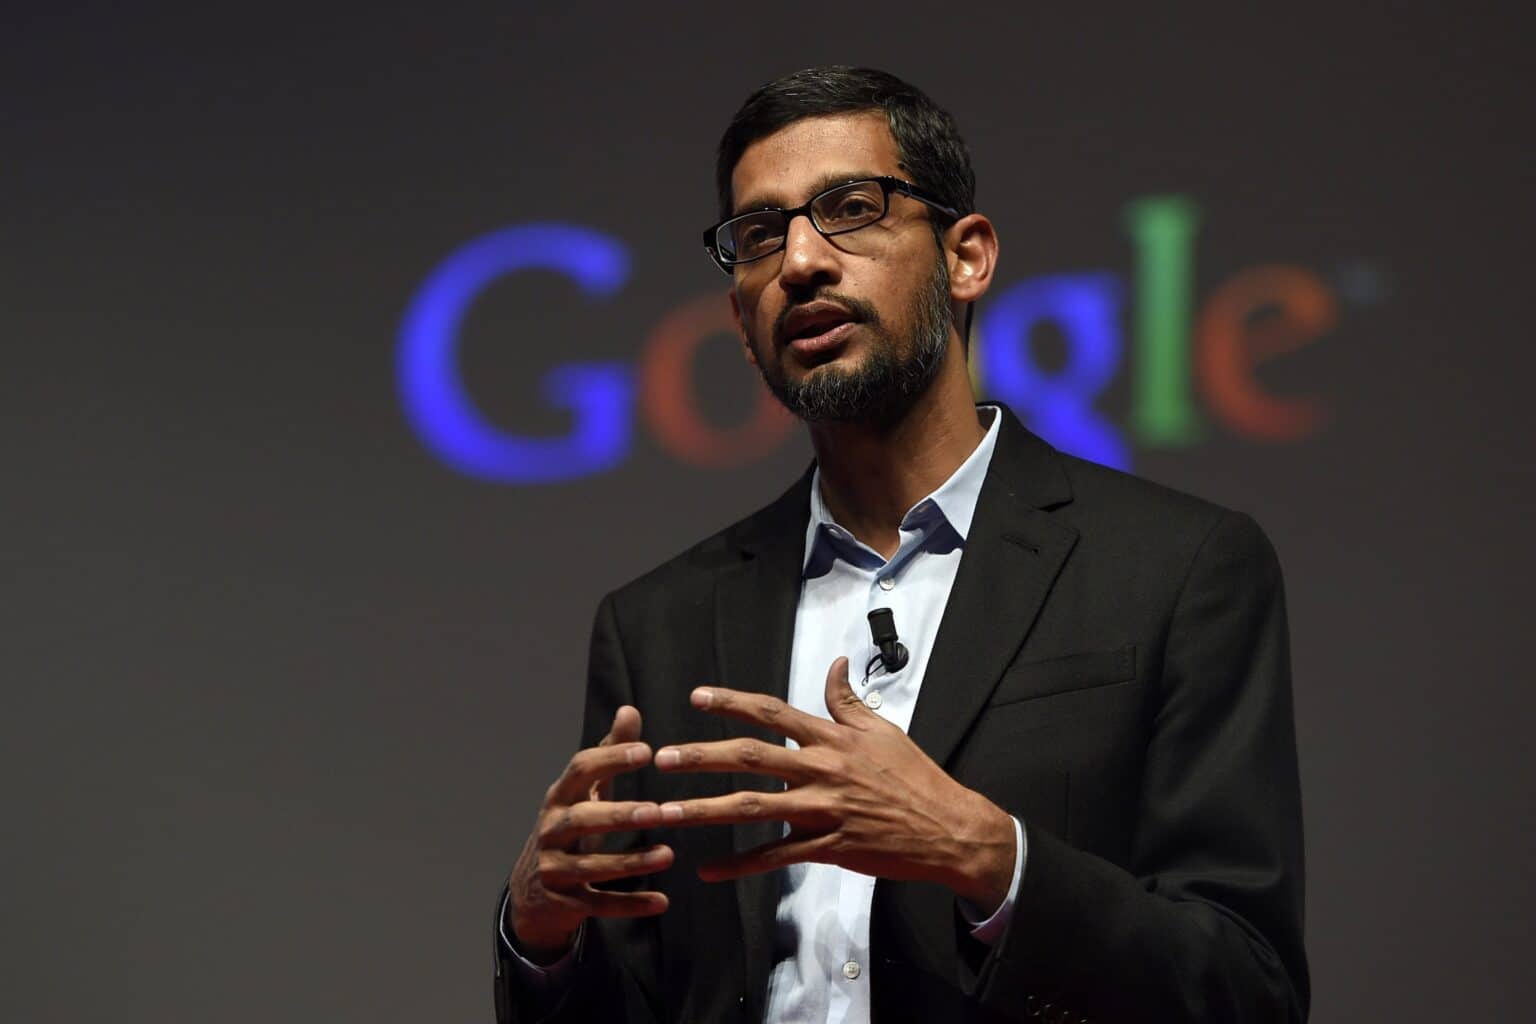 לא עוצרת: גוגל מתכננת לפטר עוד 100 עובדים לפחות